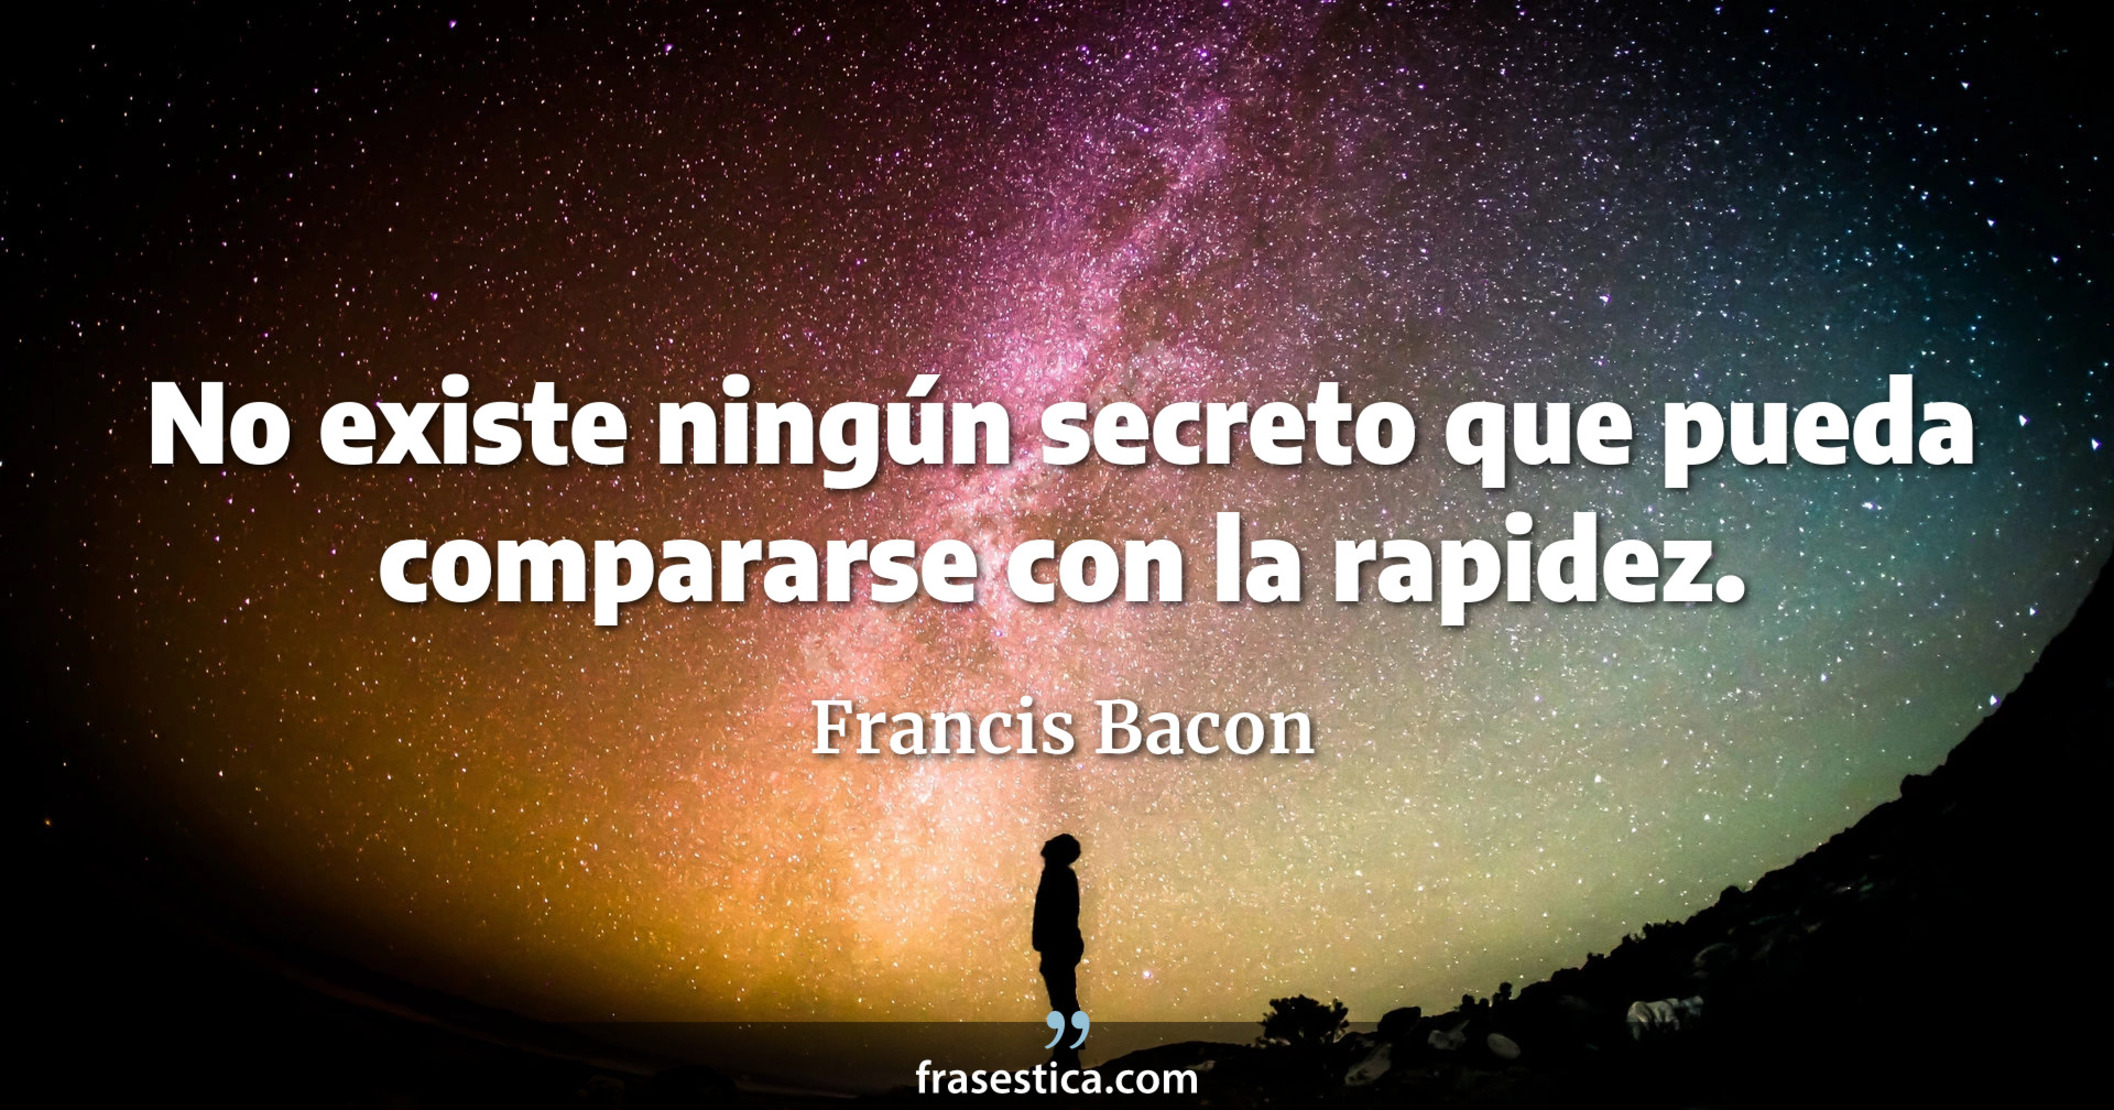 No existe ningún secreto que pueda compararse con la rapidez. - Francis Bacon